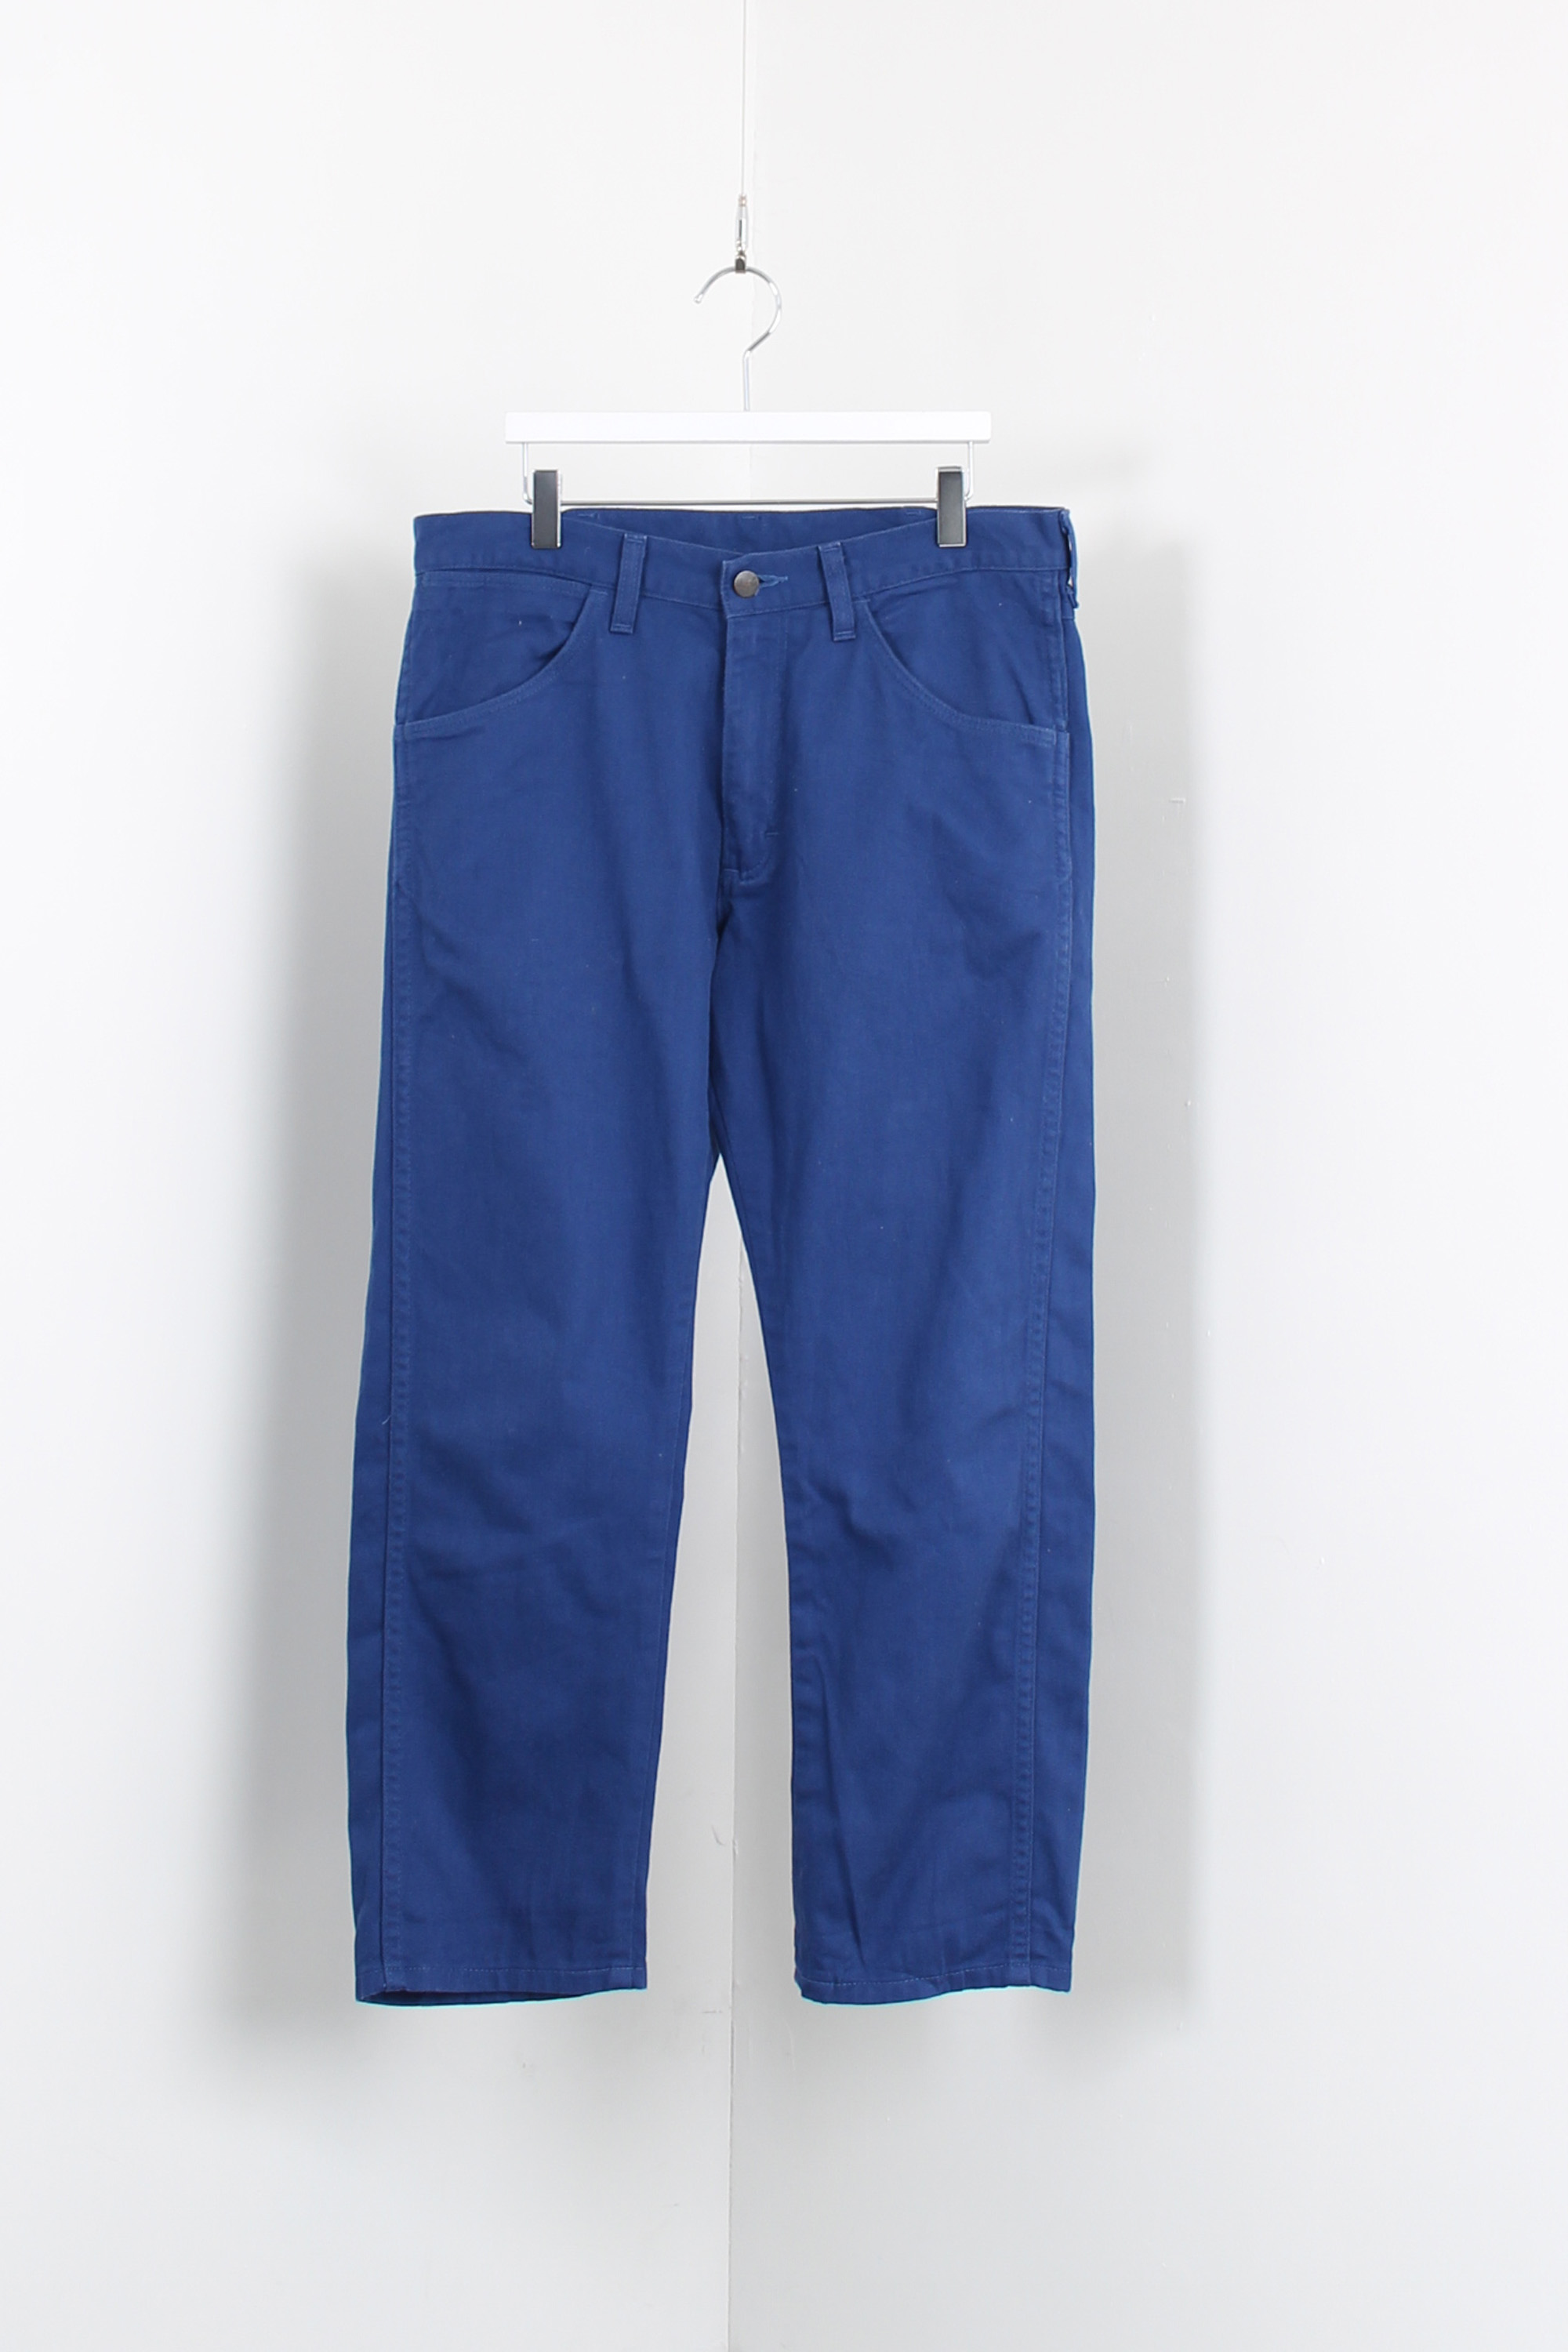 wrangler french blue pants